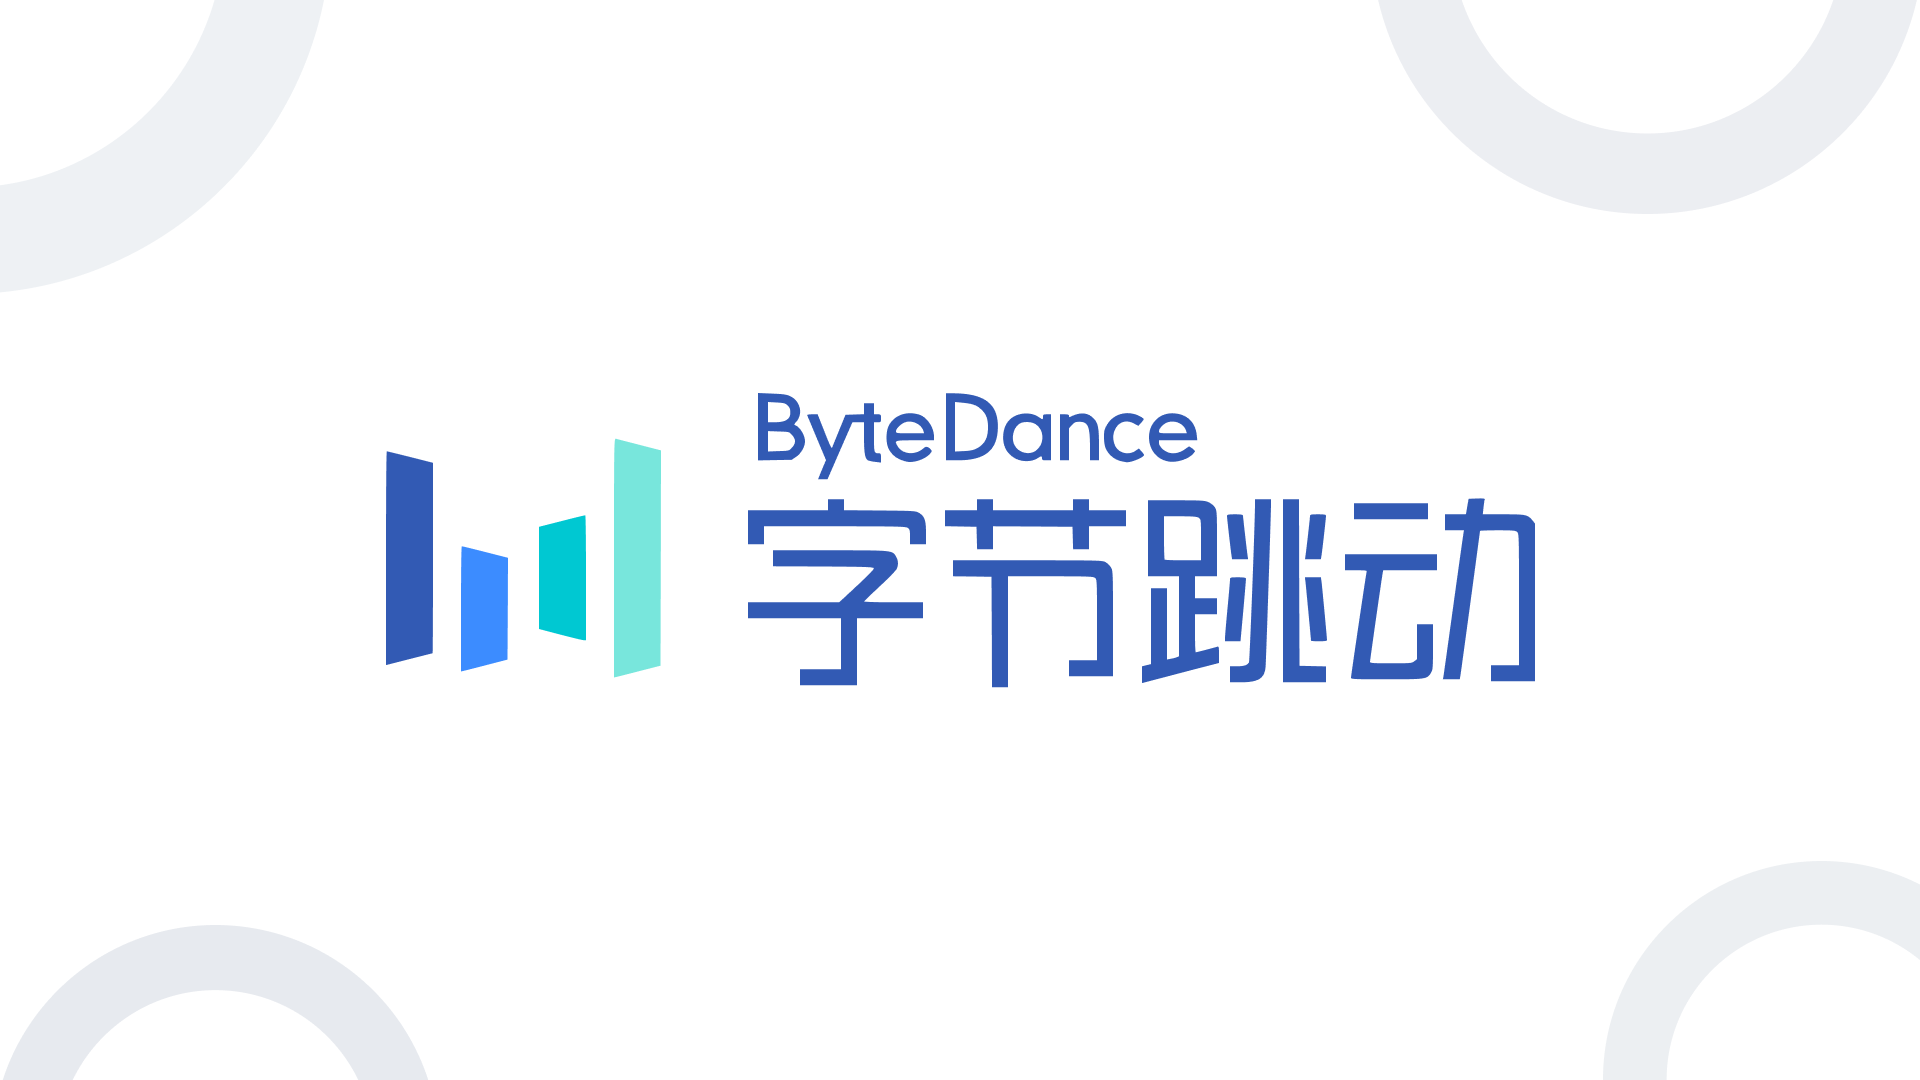 الشركة الأم لموقع تيك توك ألا وهي ByteDance